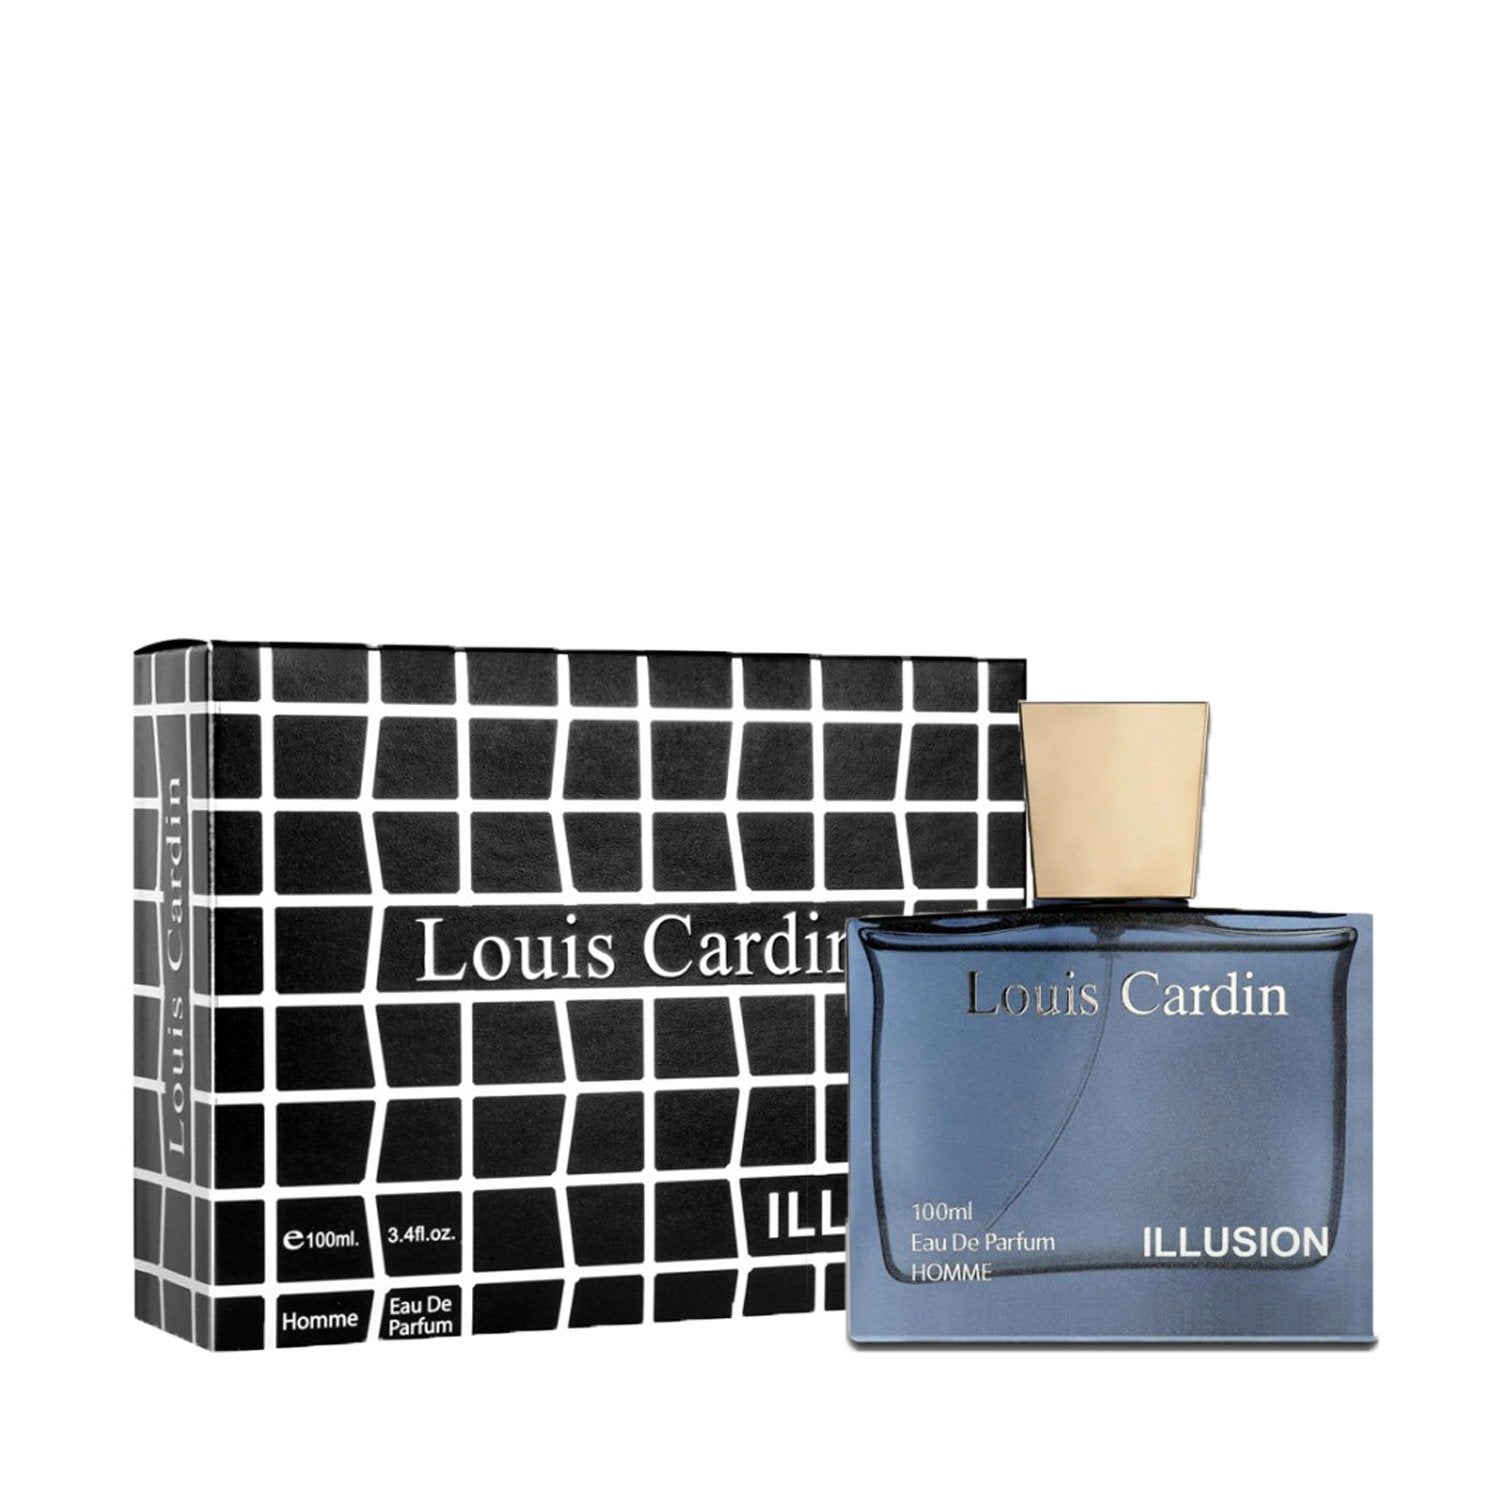 Louis Cardin Sacred Eau De Parfum 100ml